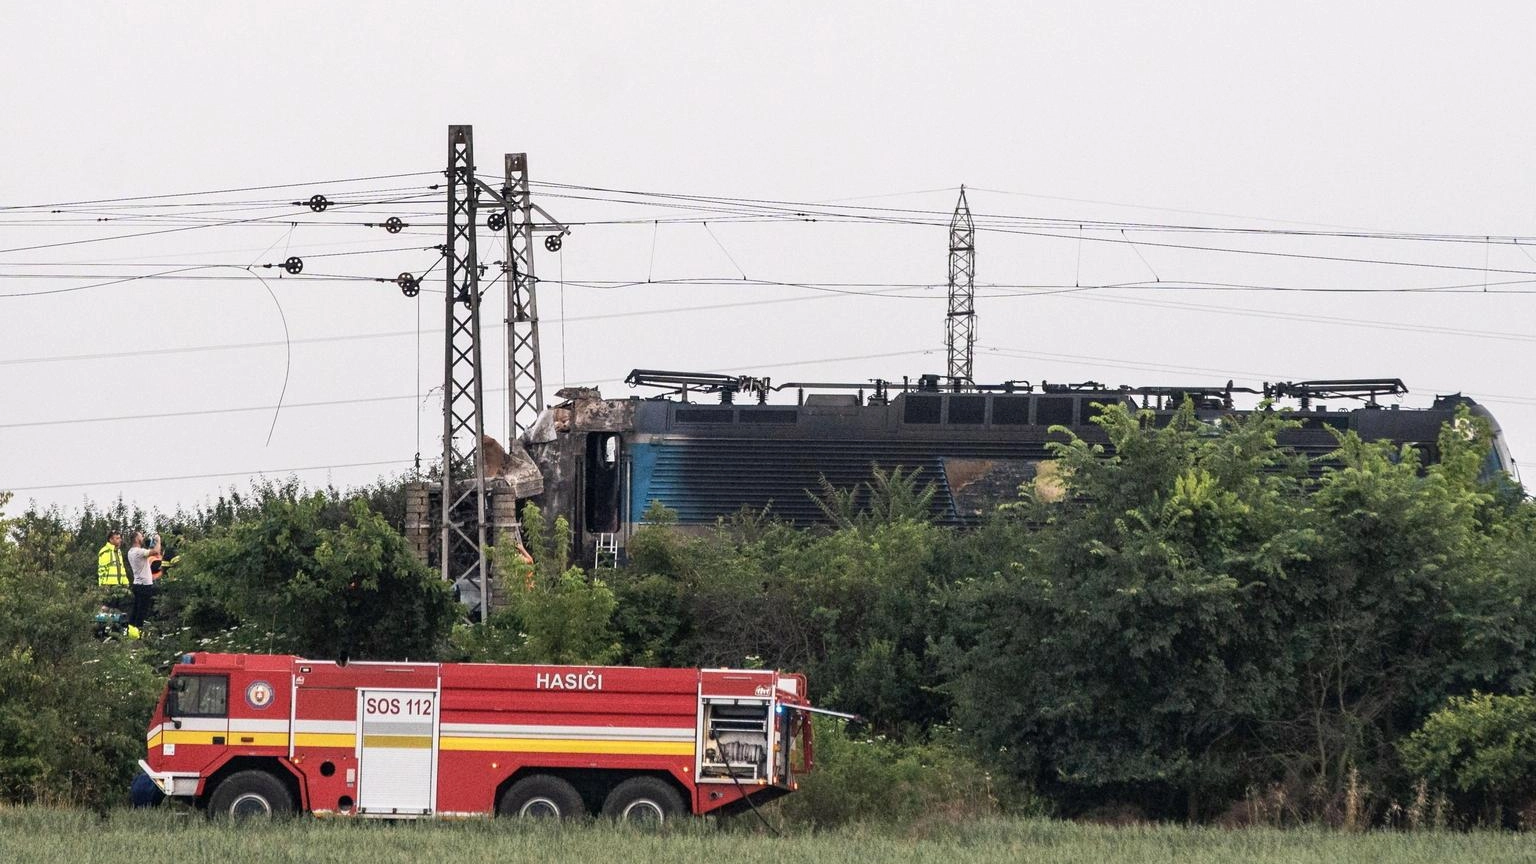 Scontro fra un treno e un bus in Slovacchia, 5 morti e 5 feriti